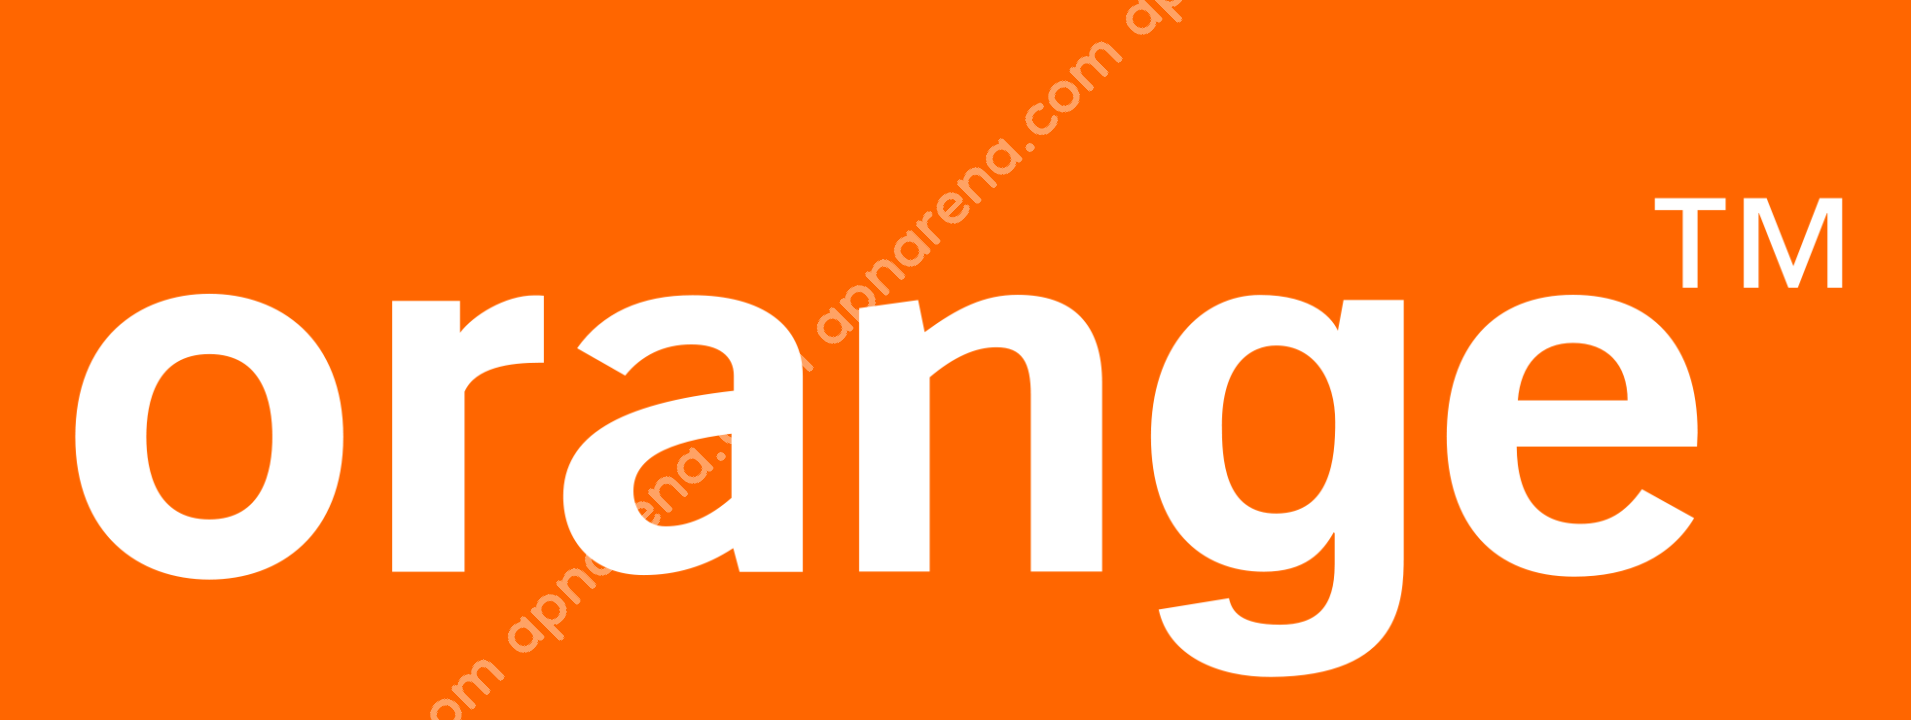 Orange Senegal APN Internet Settings Android iPhone